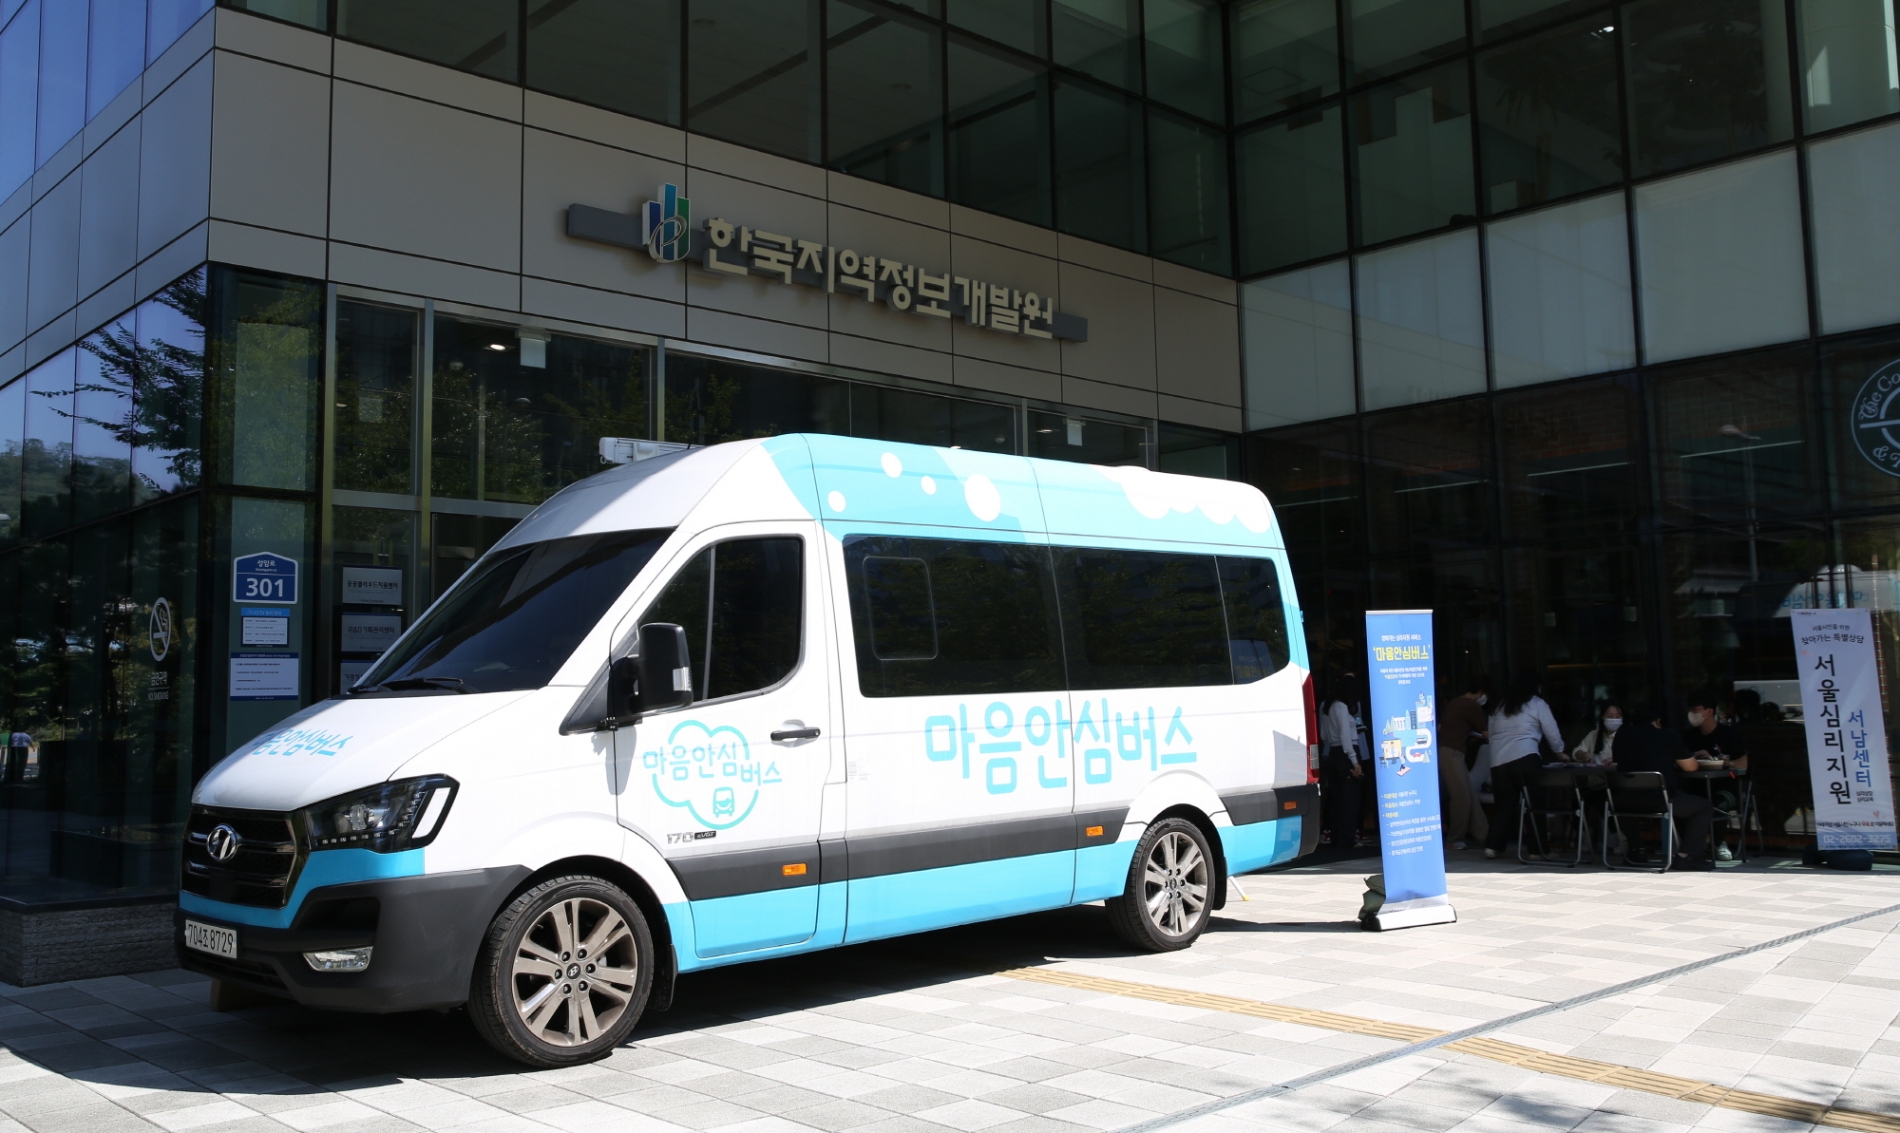 한국지역정보개발원이 임직원을 대상으로 청사 정문 앞에서 ‘마음안심버스’를 운영하며 심리지원 서비스를 제공하고 있다. /사진제공=한국지역정보개발원